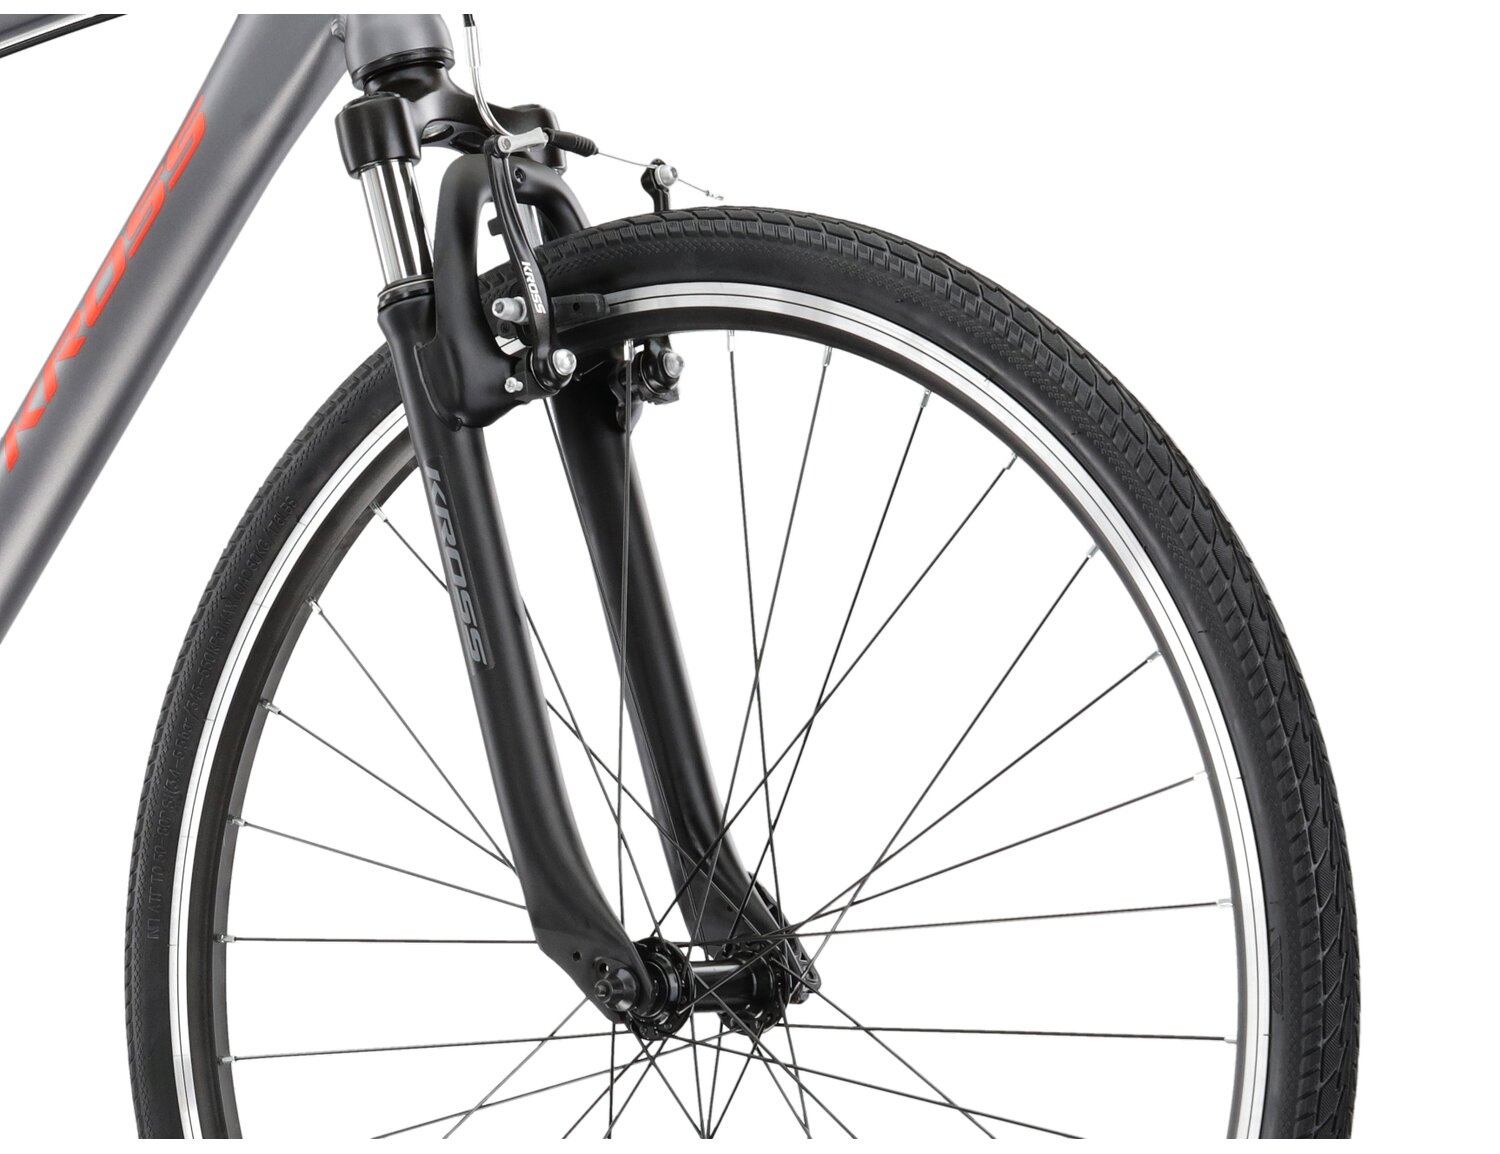 Aluminowa rama, amortyzowany widelec oraz opony Wanda w rowerze crossowym KROSS Evado 1.0 